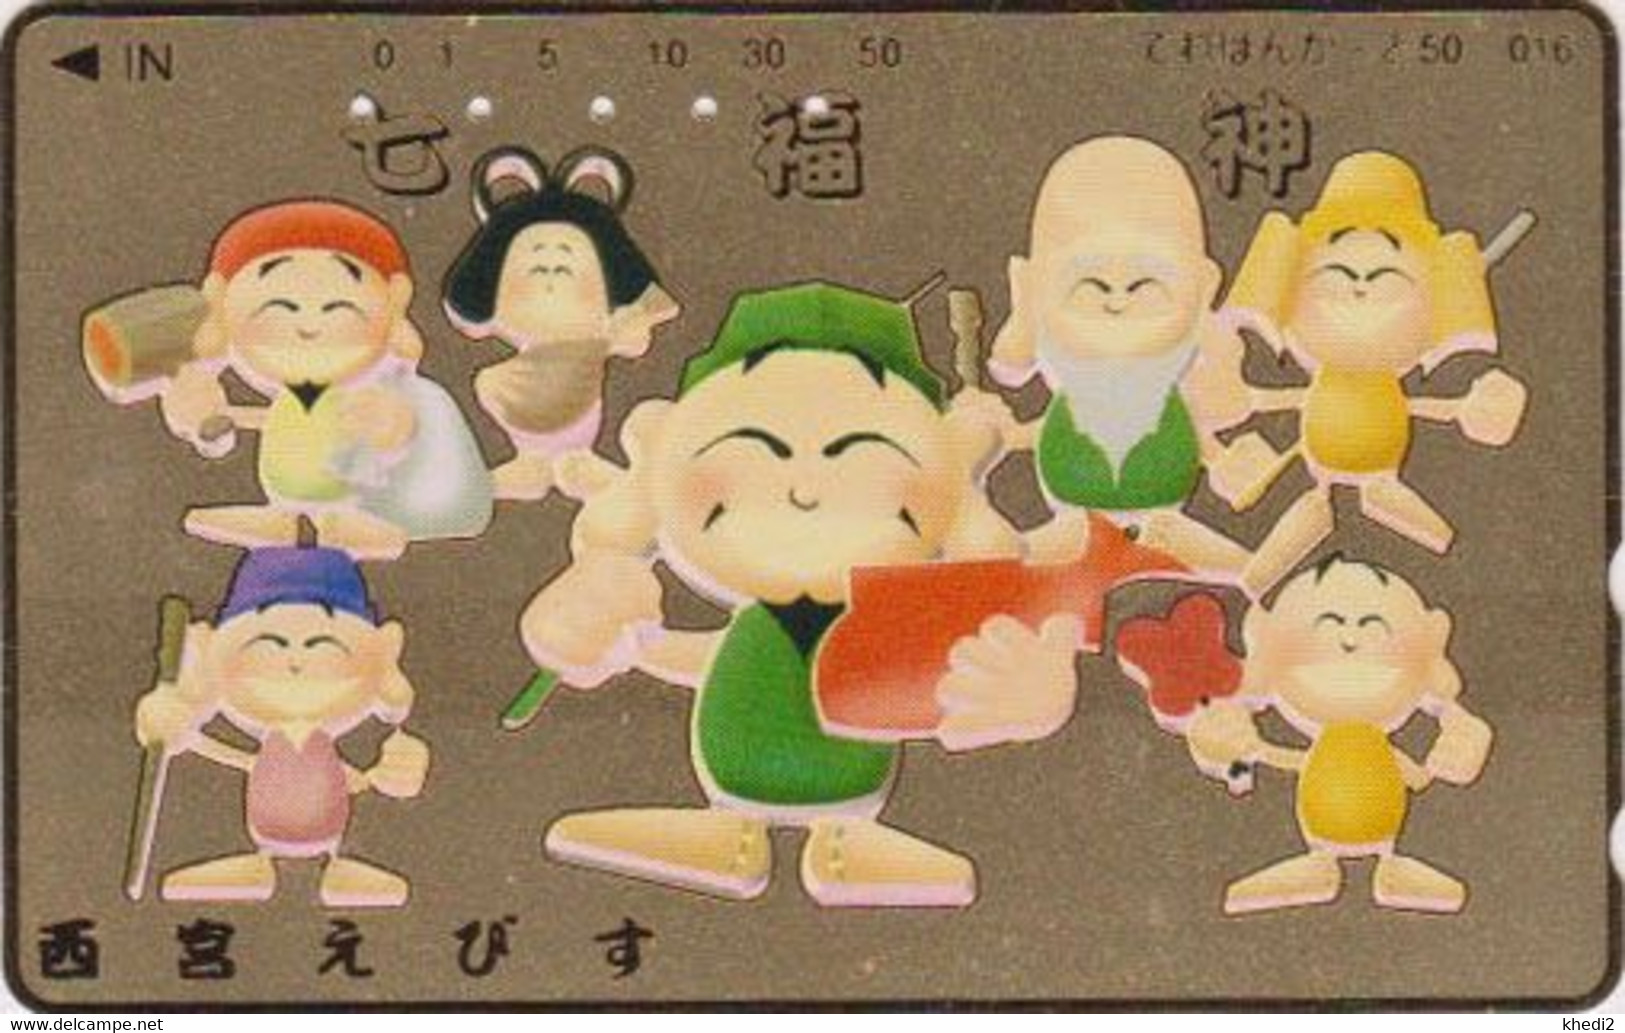 TC DOREE JAPON / 110-011 - Culture RELIGION - 7 DIEUX DU BONHEUR - LUCK GODS JAPAN GOLD Phonecard - 324 - Kultur